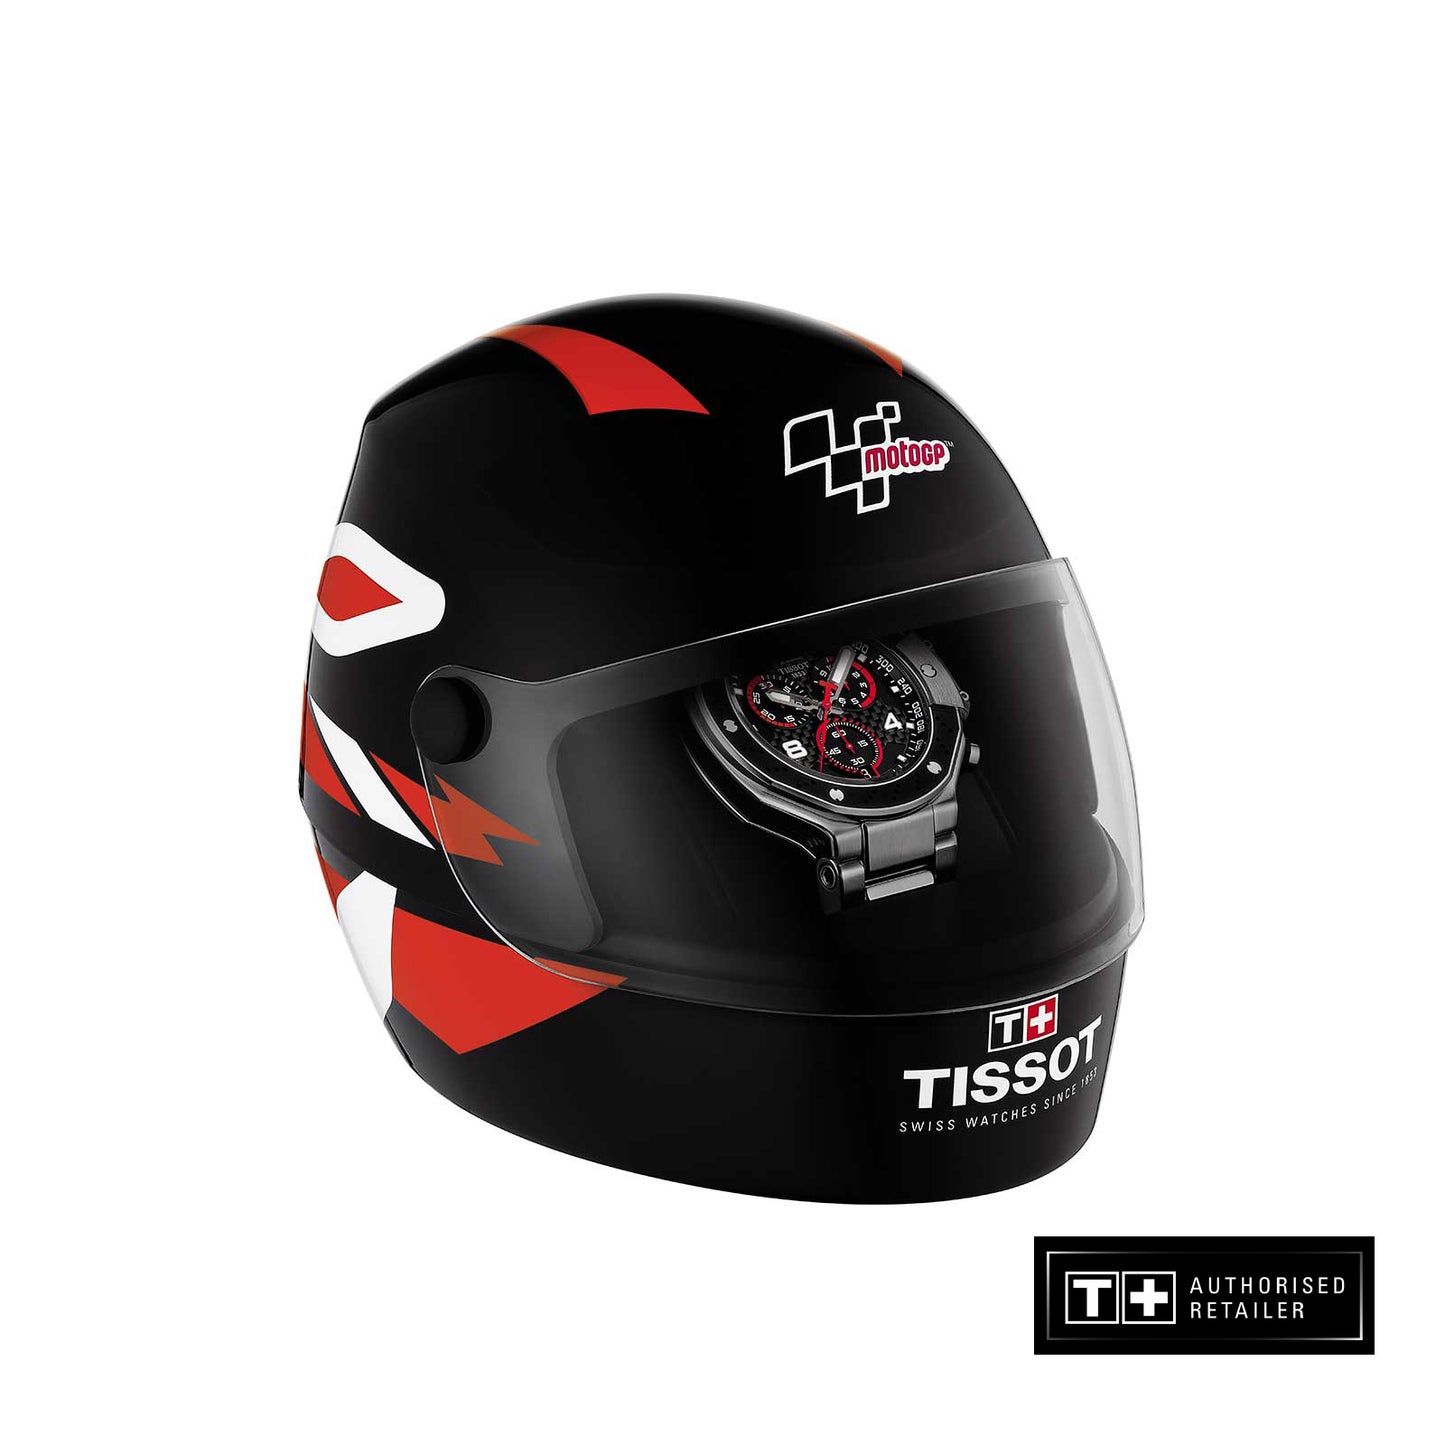 Tissot T- Race MotoGP Chronograph 2022 Limited Edition T141.417.11.057.00